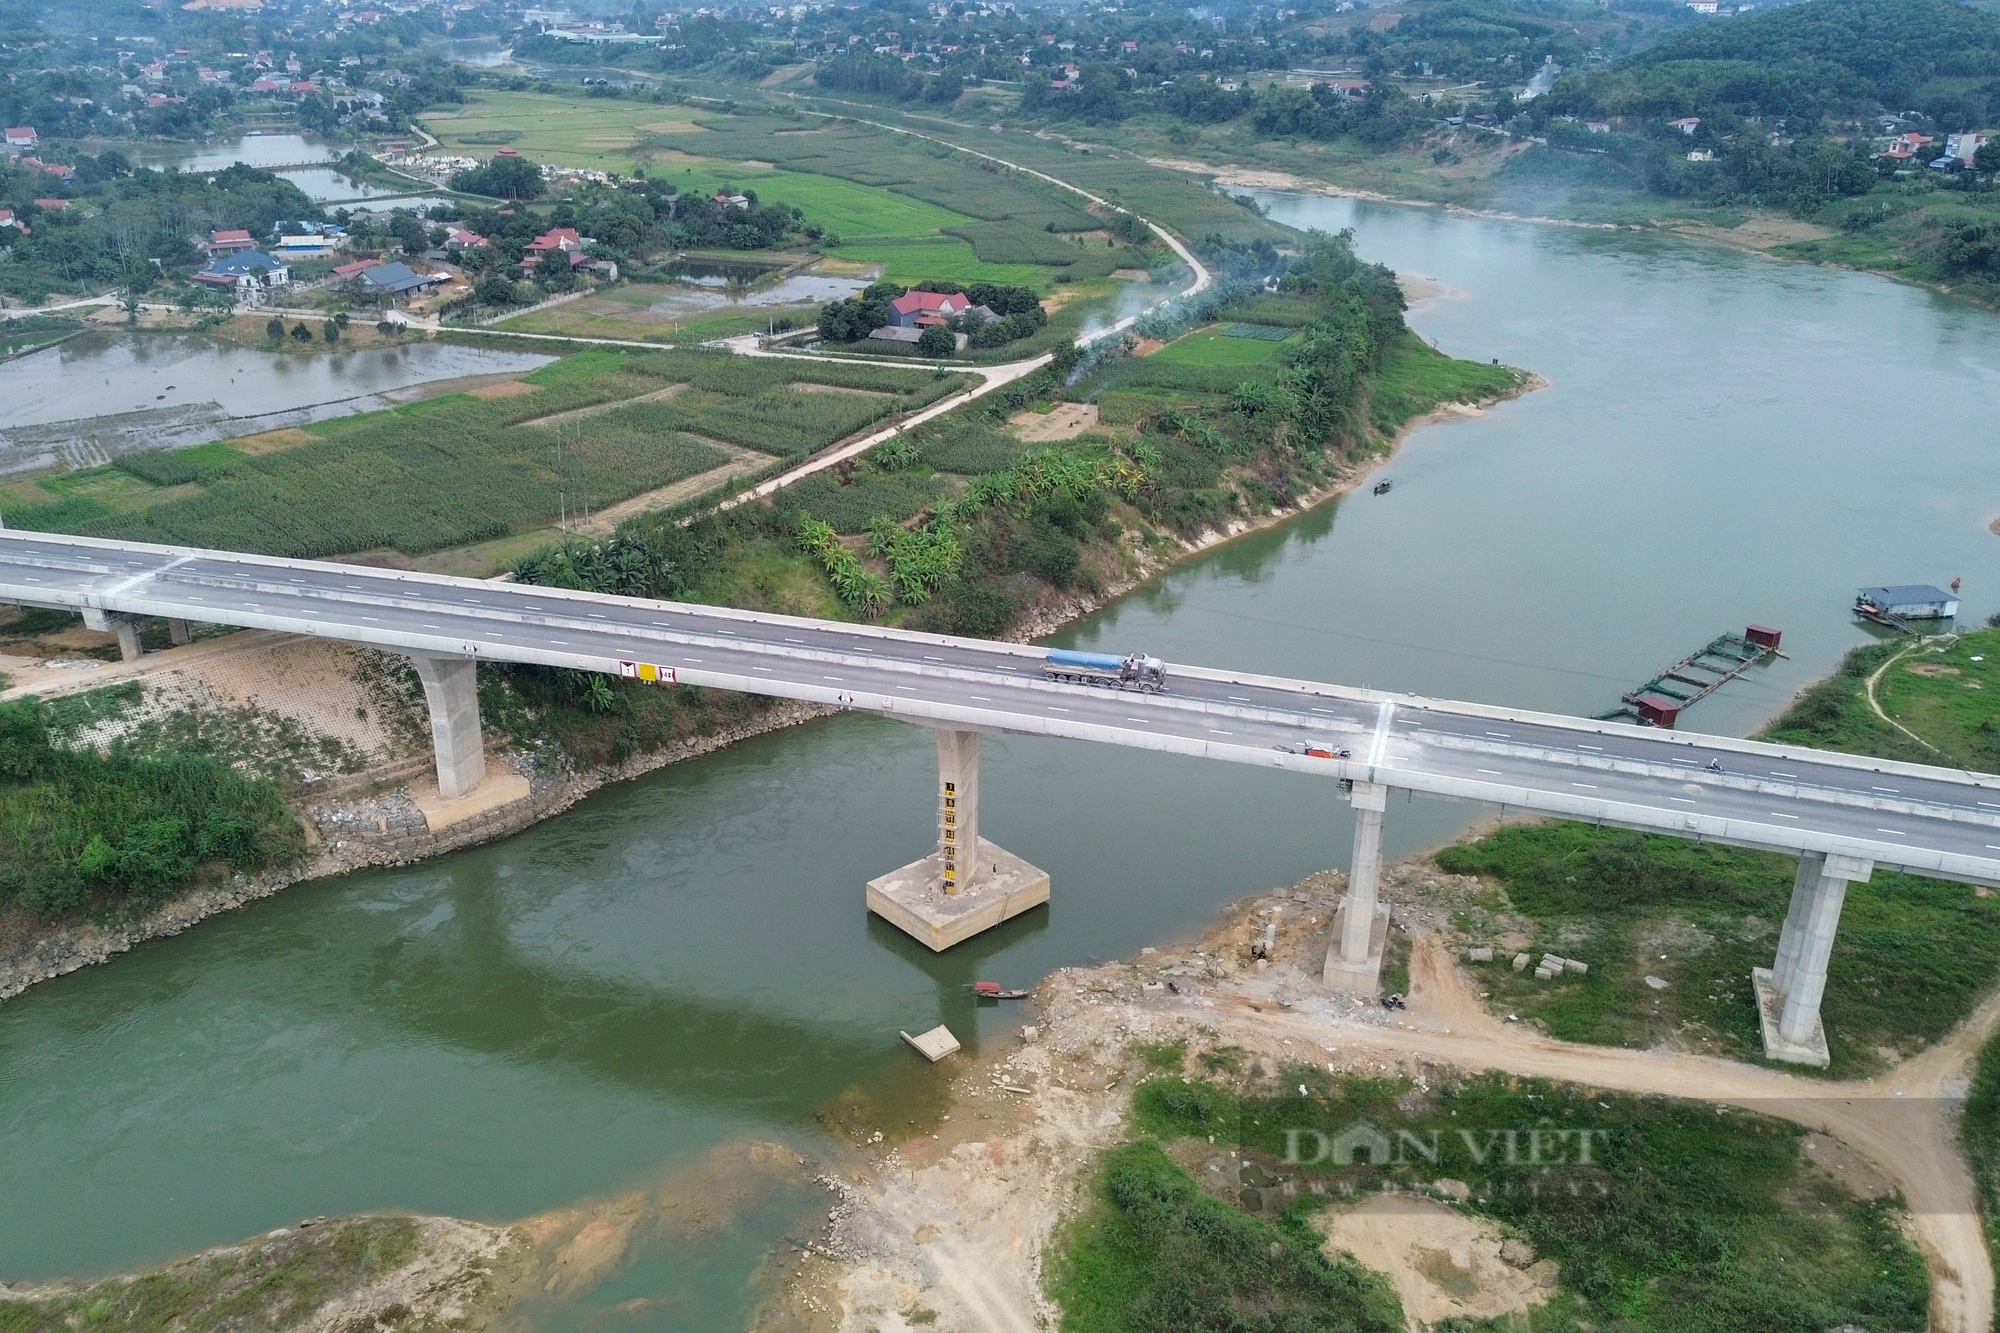 Cao tốc Tuyên Quang - Phú Thọ đạt kỷ lục thời gian thi công nhưng không có làn dừng khẩn cấp - Ảnh 11.